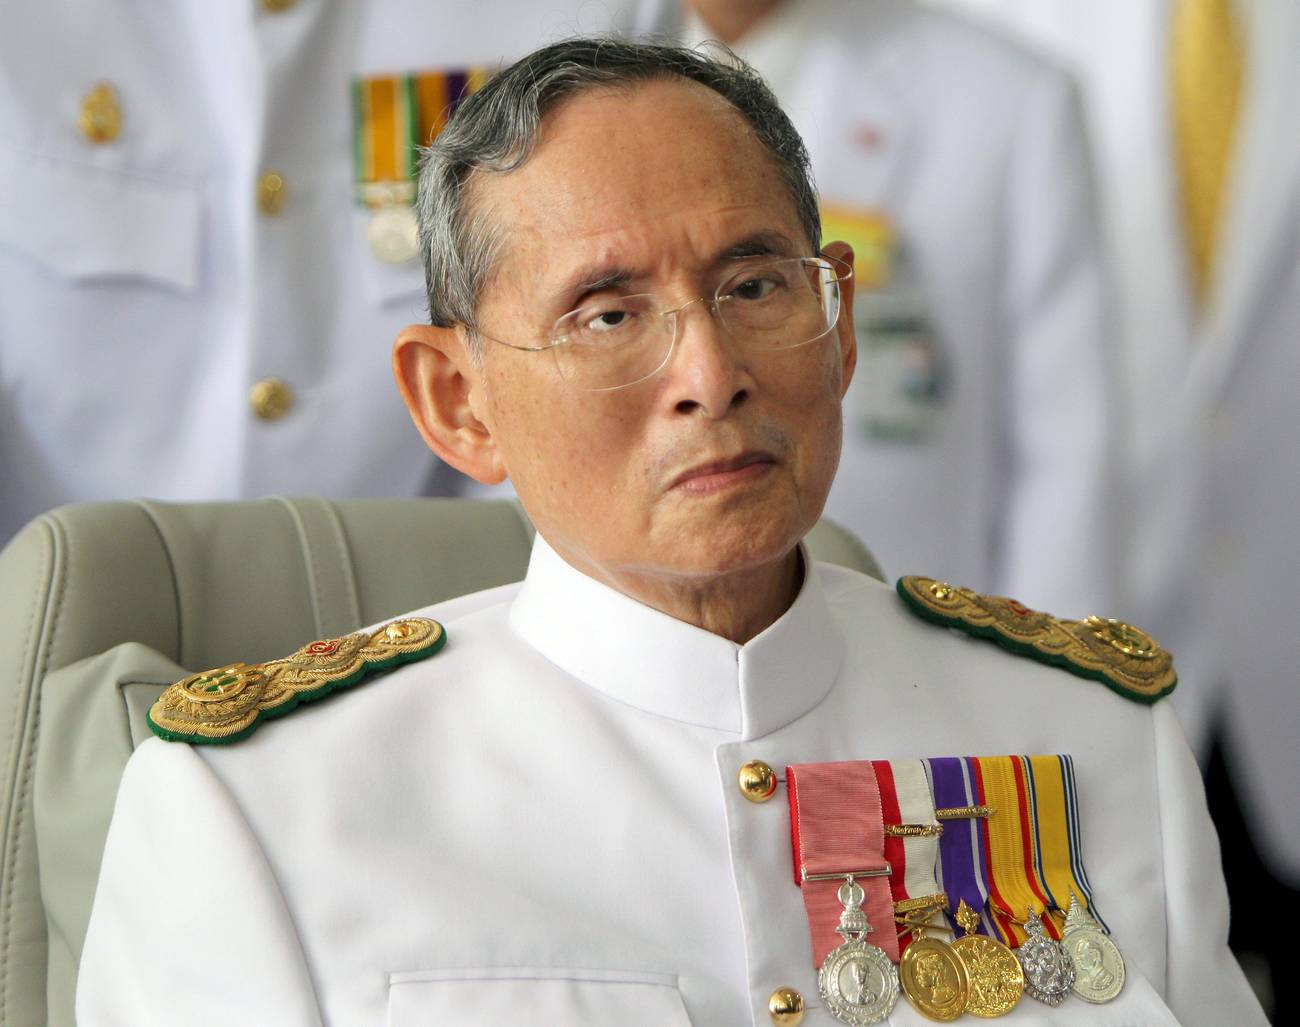 Un año de luto  Tras la muerte del rey, en Tailandia se avecinan tiempos inciertos